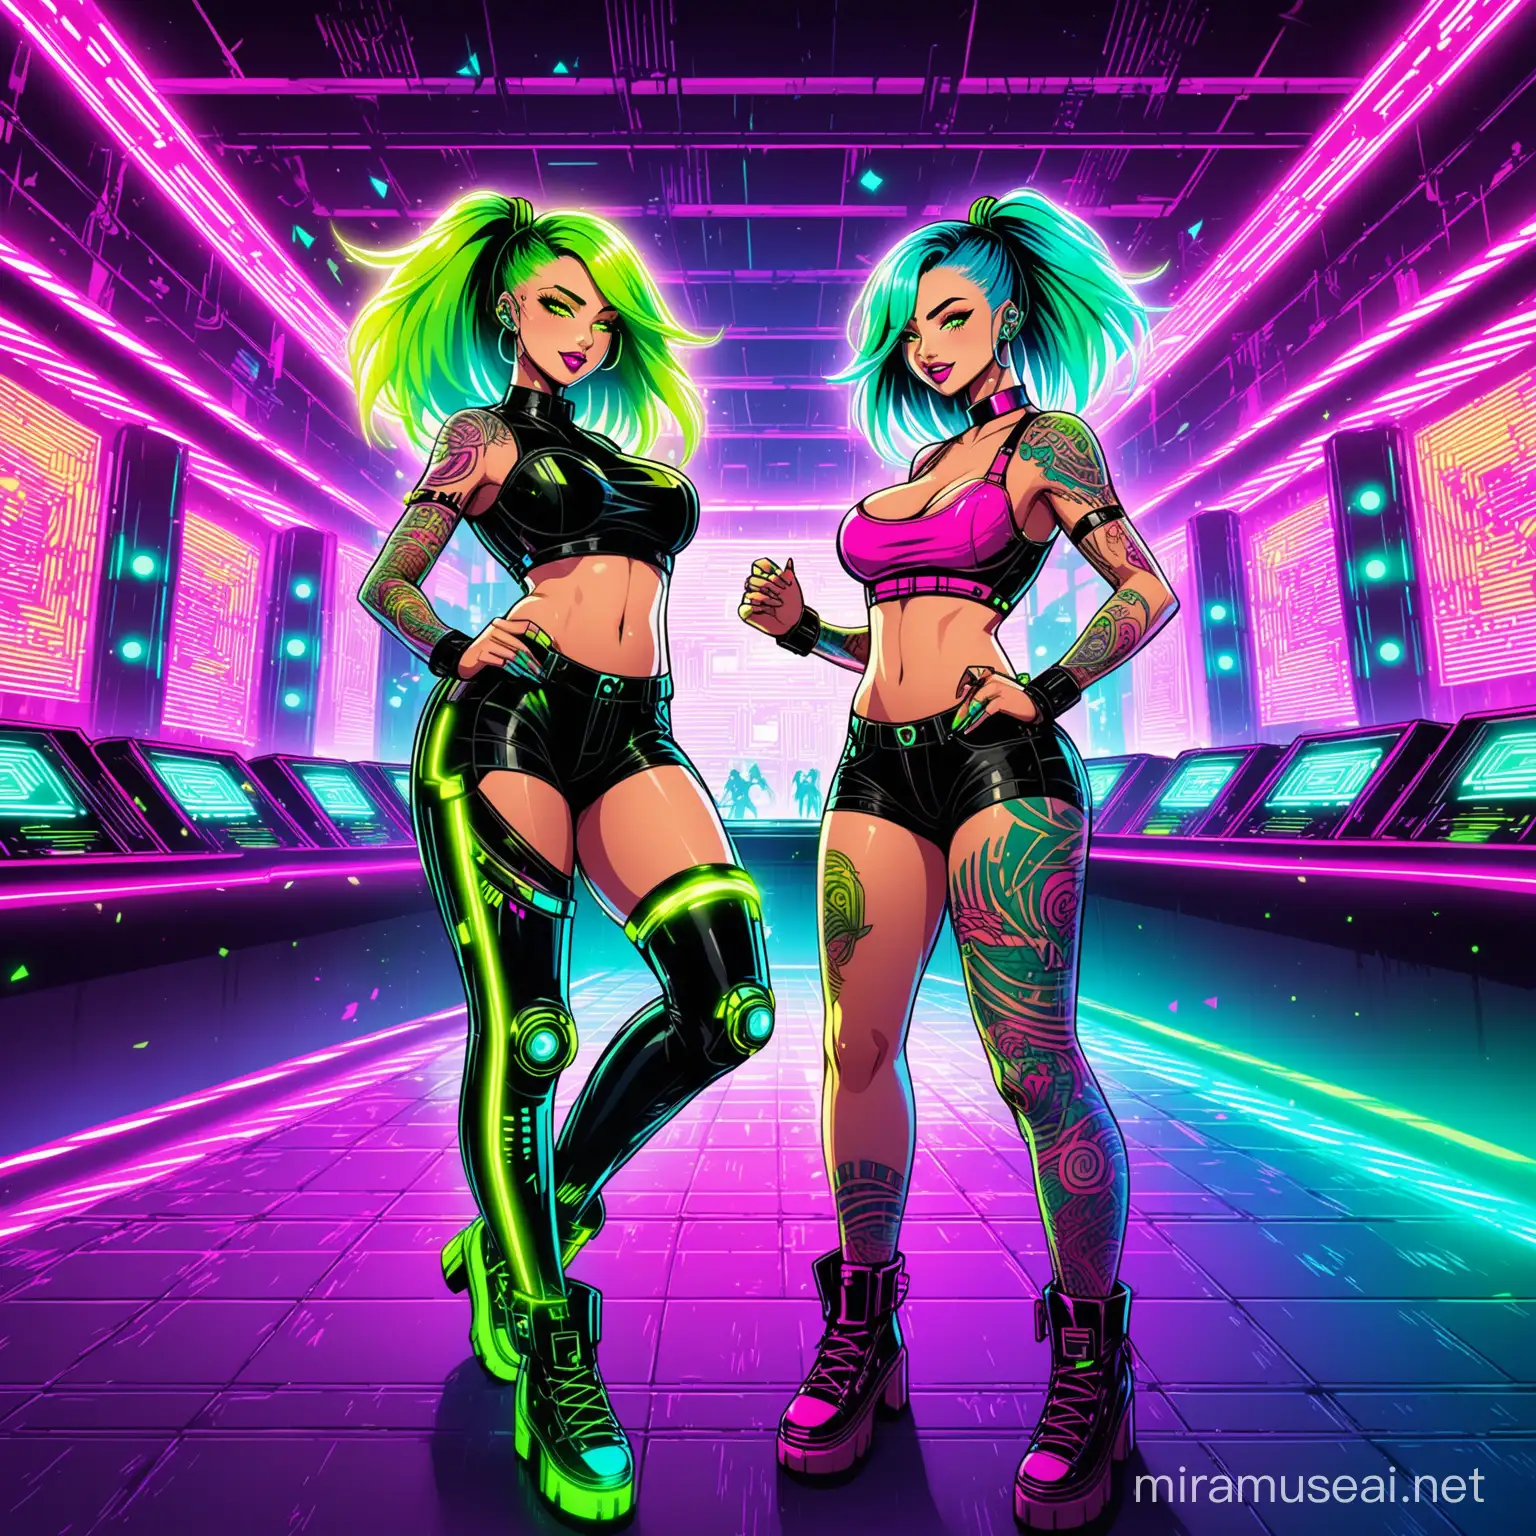 crea fantasy cartone animato cyberpunk con colori fluo fucsia, giallo,blu e verde. Due ragazze bellissime,  meravigliose e tatuate ballano in discoteca. locale cyberpunk